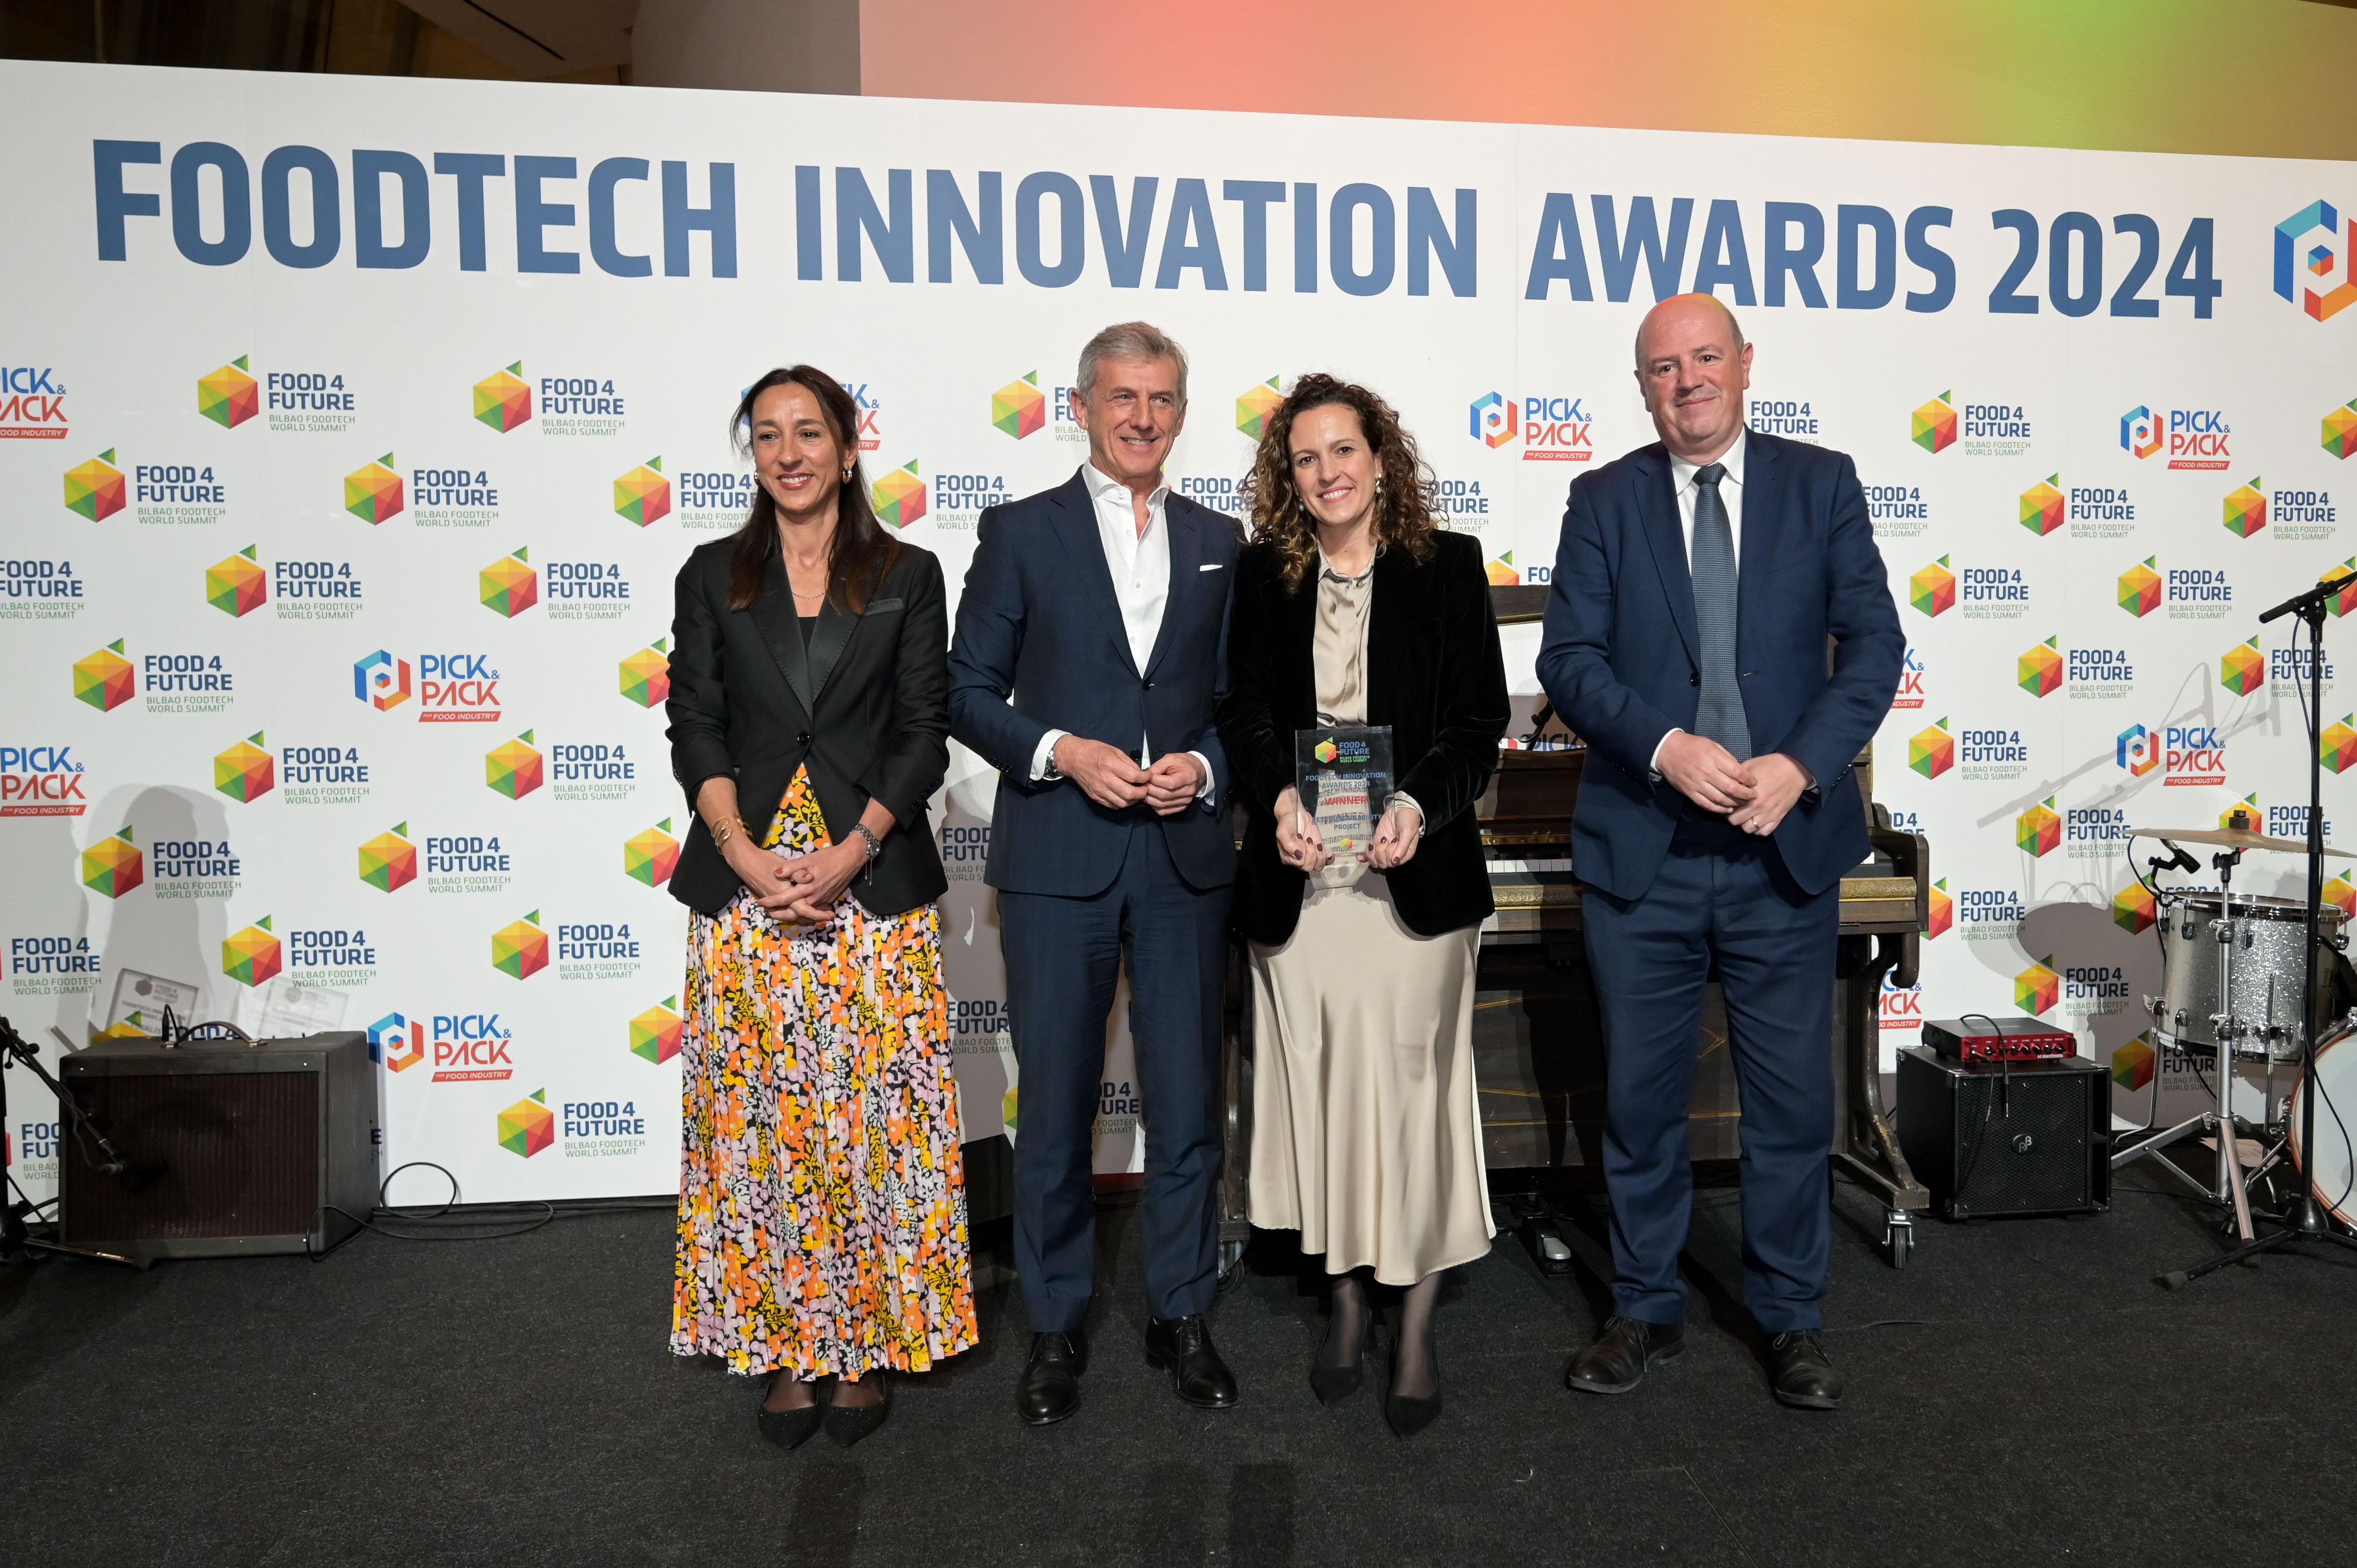 COVAP recibe el premio "Best sustainability project" de los Foodtech Innovation Awards 2024